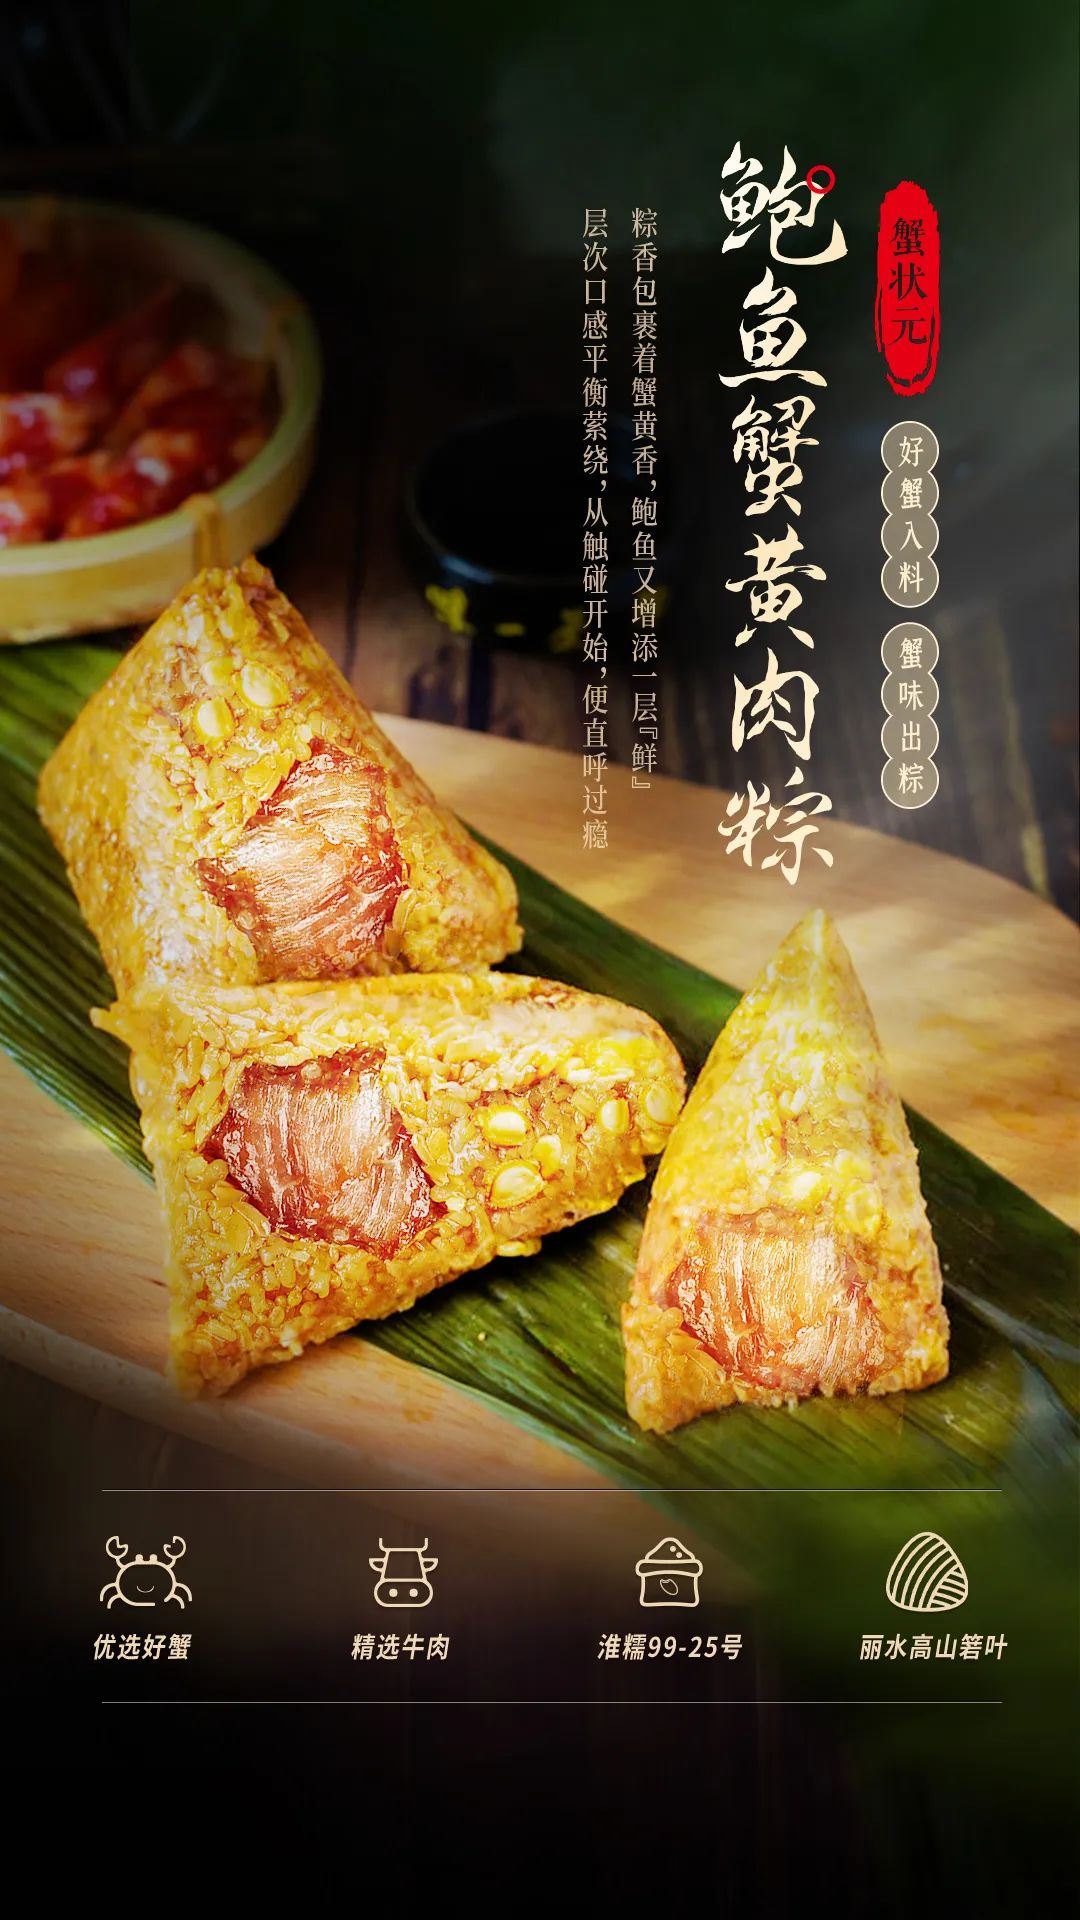 鲍鱼蟹黄肉粽6219